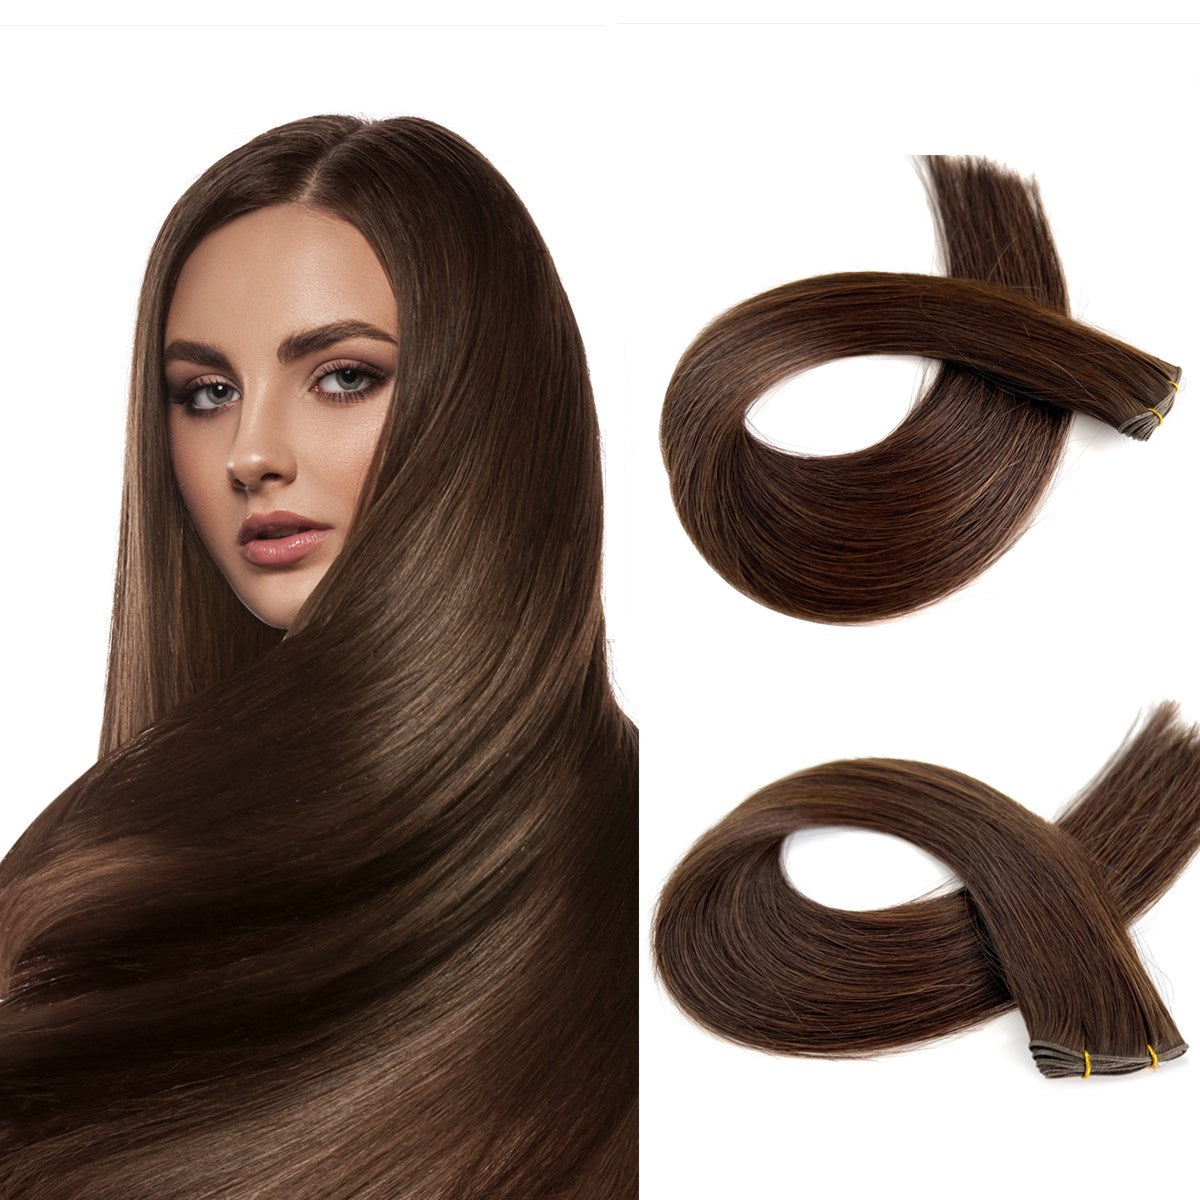 Genius Weft Hair Extensions - 100% Virgin Human Hair Wefts #2| Hairperfecto